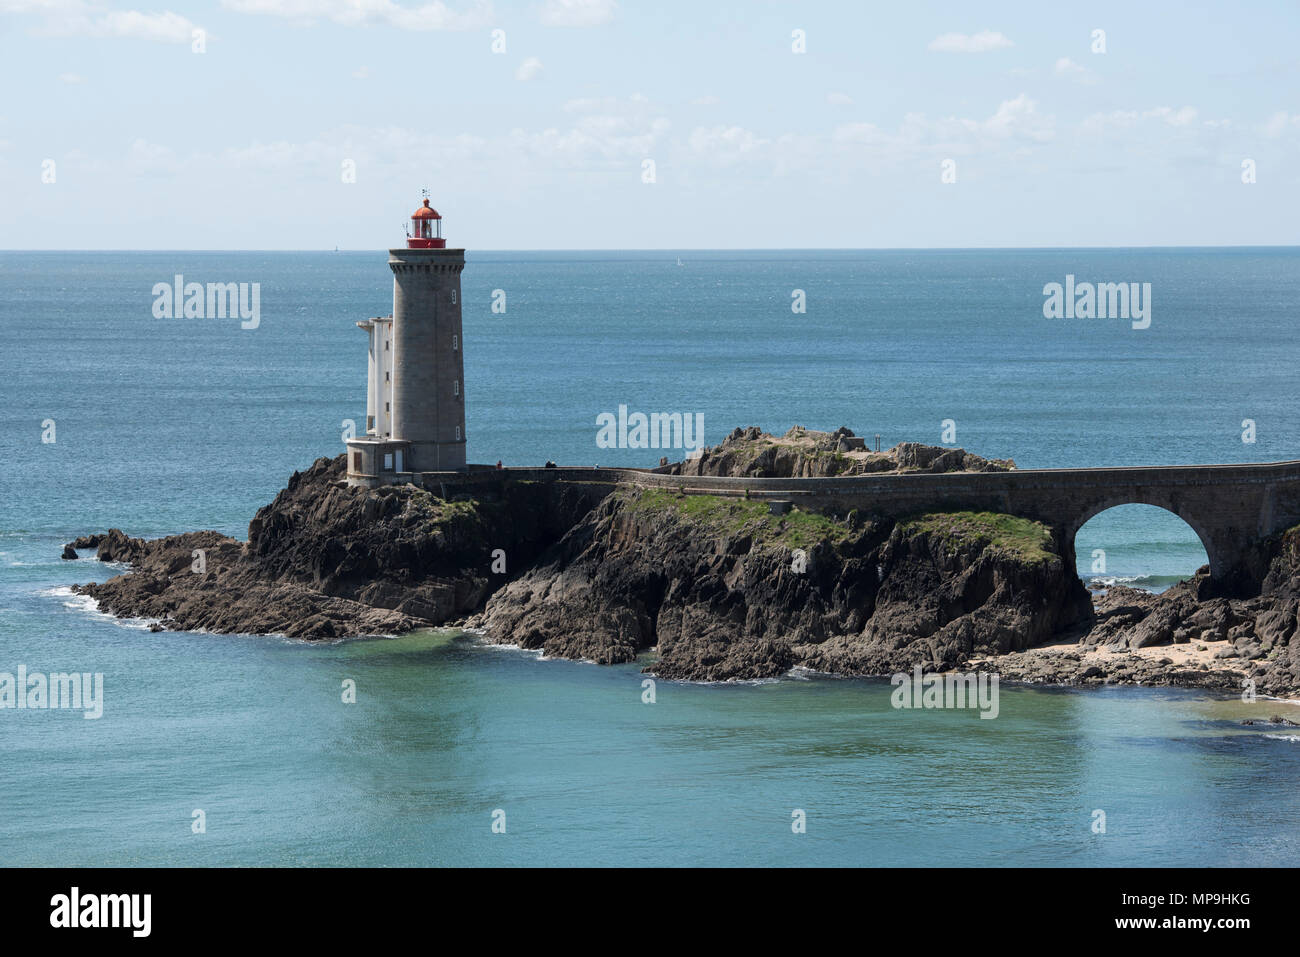 Phare du Diable ist ein Leuchtturm in der Nähe der Stadt Brest, Bretagne, Frankreich. Stockfoto